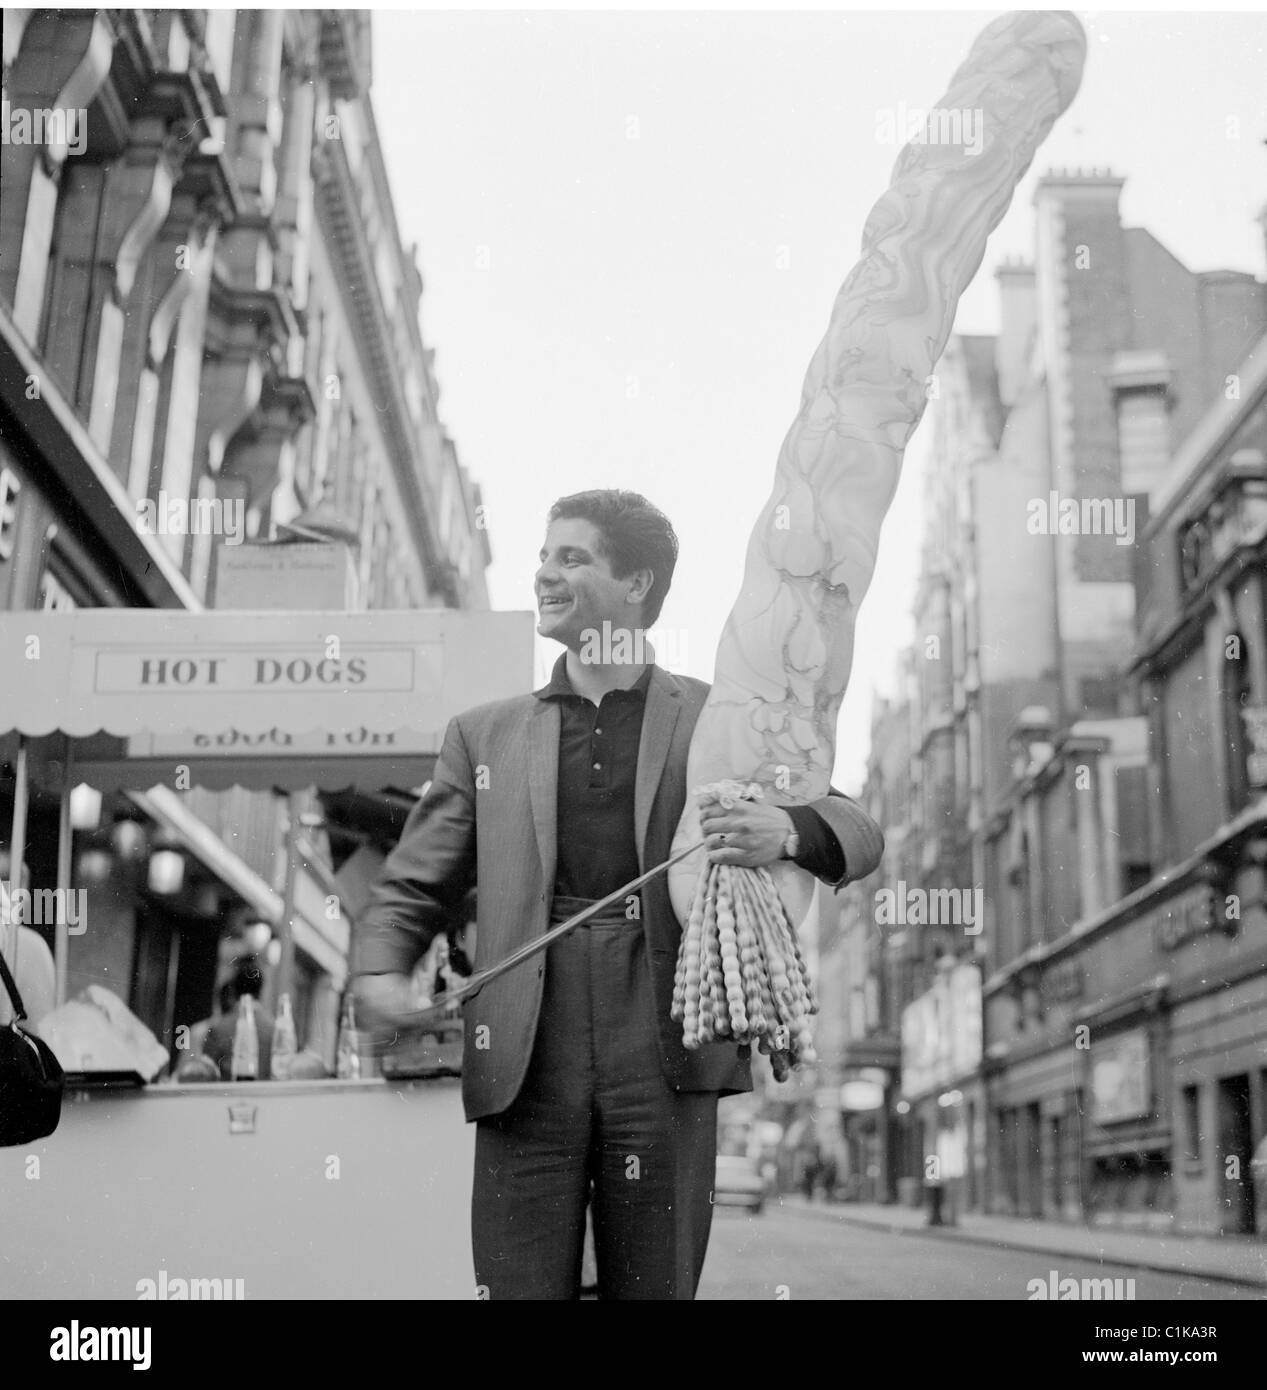 1960er Jahre London. Straßenhändler verkaufen lange, schmale geformten Ballons am Leicester Square, in diesem historischen Bild von J Allan Cash. Stockfoto